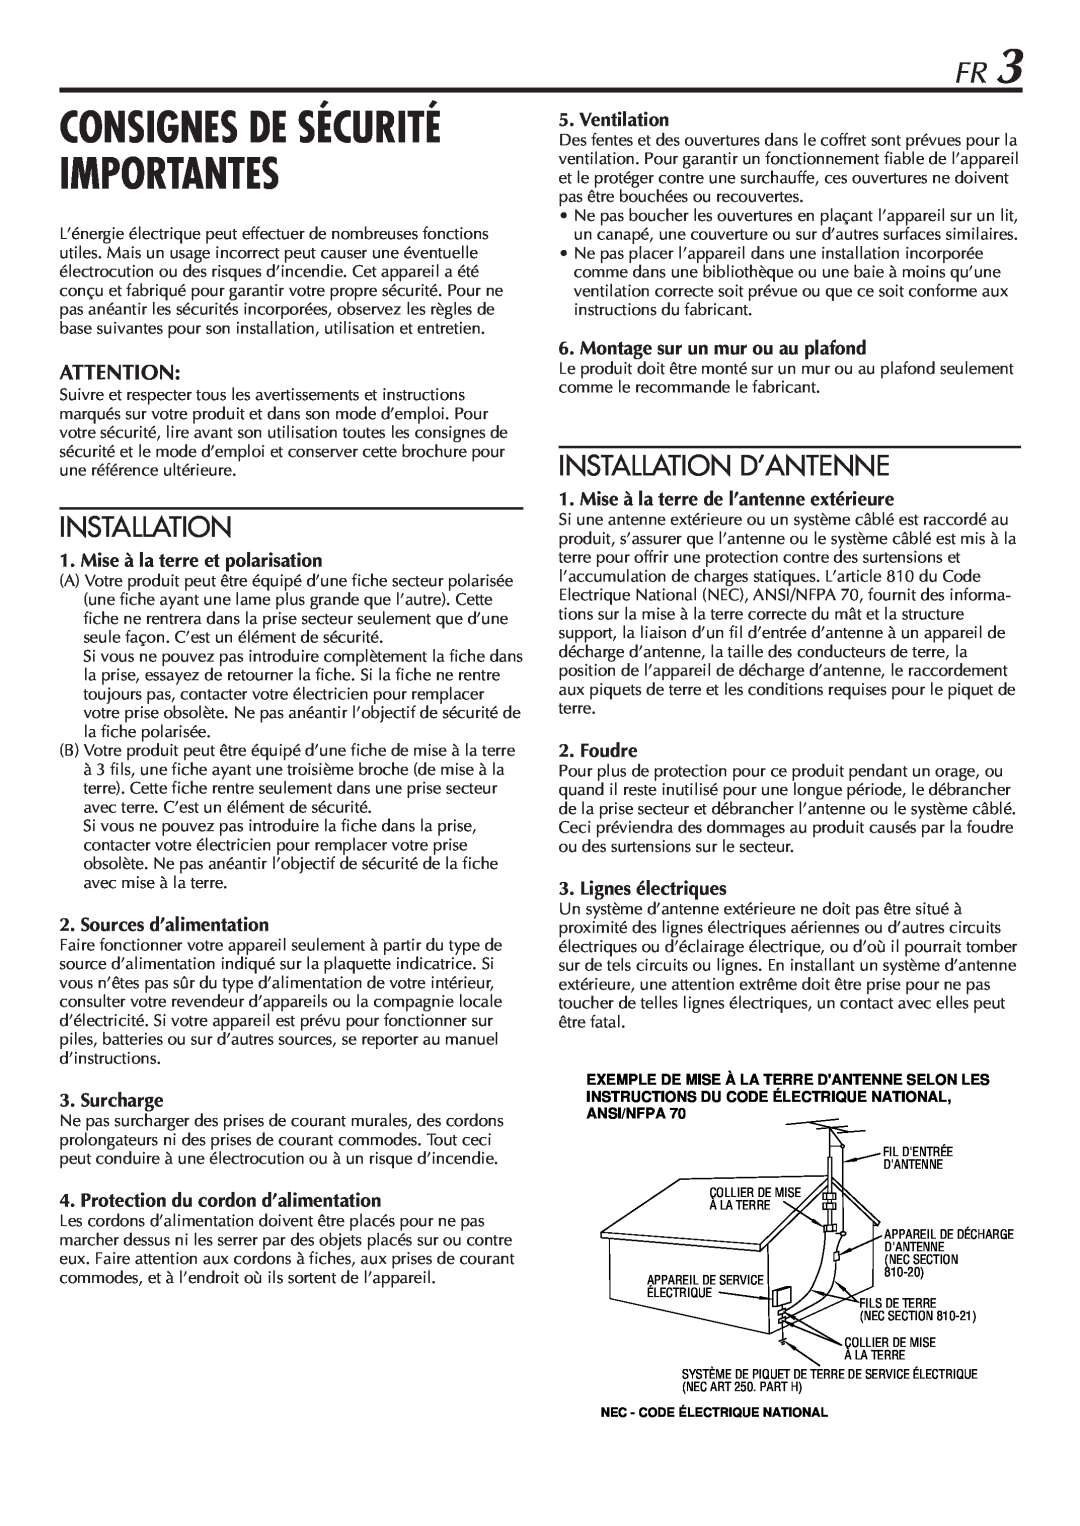 JVC HR-VP58U manual Installation D’Antenne, Consignes De Sécurité Importantes 